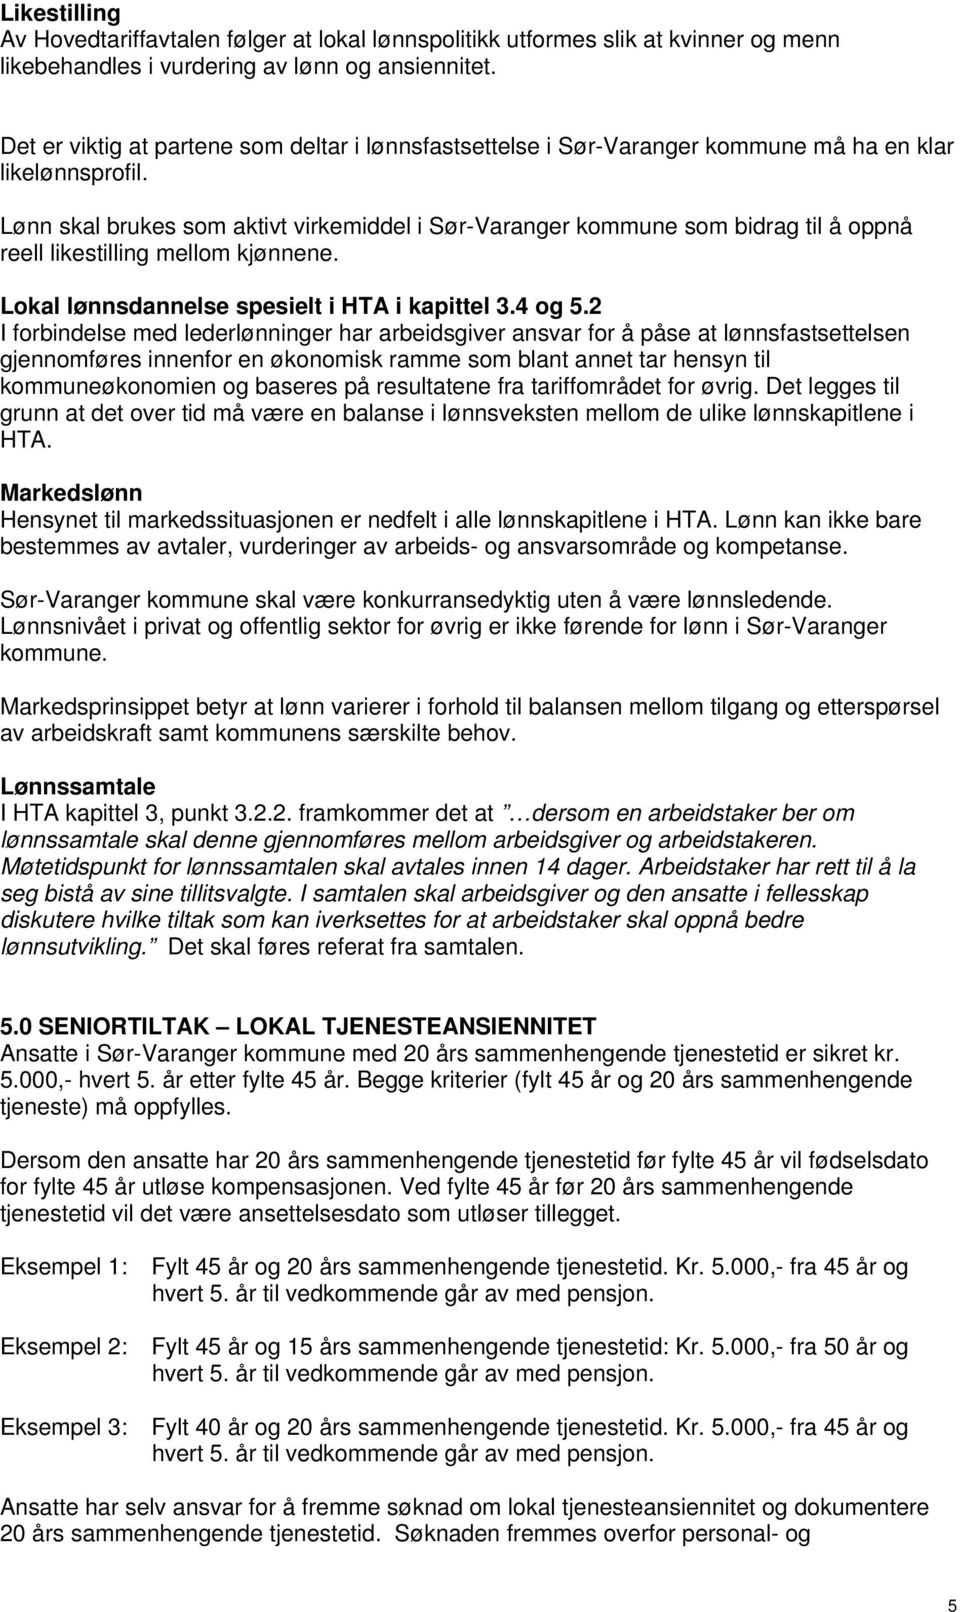 Lønn skal brukes som aktivt virkemiddel i Sør-Varanger kommune som bidrag til å oppnå reell likestilling mellom kjønnene. Lokal lønnsdannelse spesielt i HTA i kapittel 3.4 og 5.